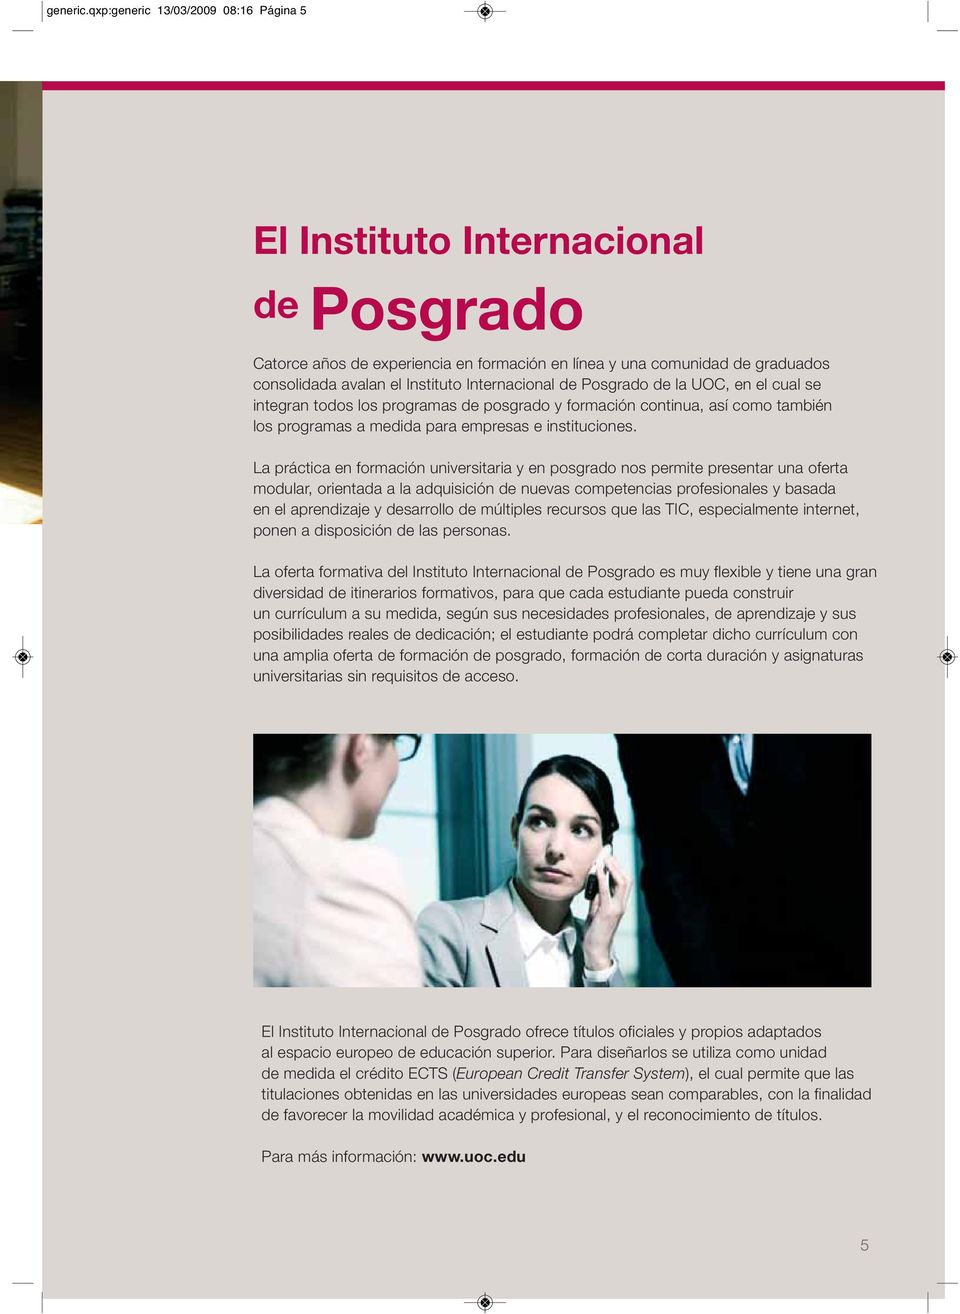 Internacional de Posgrado de la UOC, en el cual se integran todos los programas de posgrado y formación continua, así como también los programas a medida para empresas e instituciones.